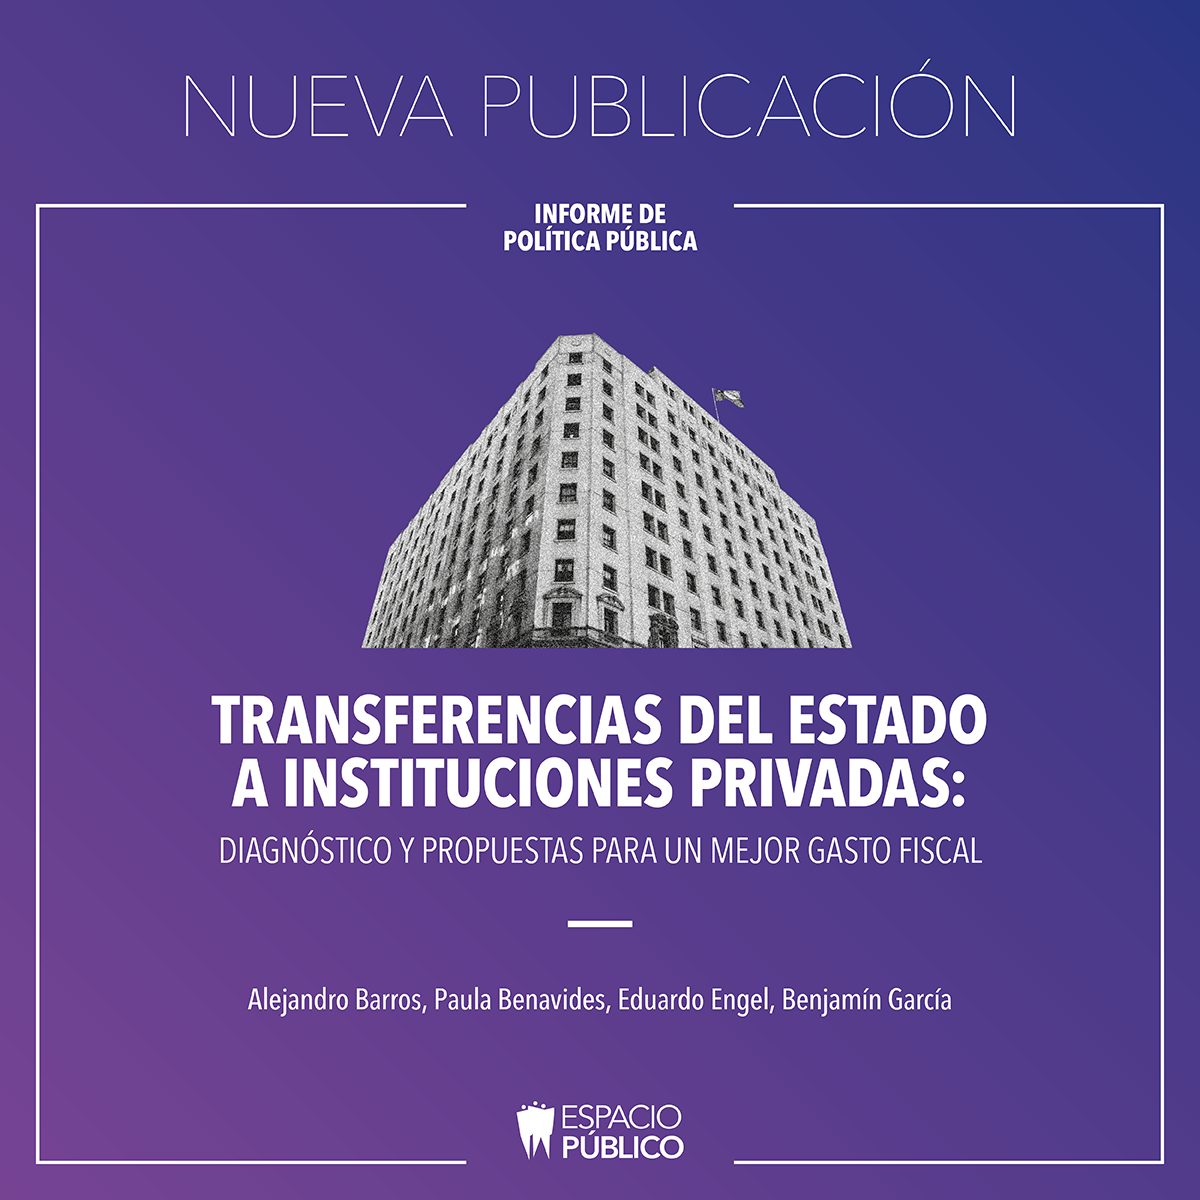 Estudio de Espacio Público: «Transferencias del Estado a instituciones privadas.  Diagnostico y propuestas para un mejor gasto fiscal».